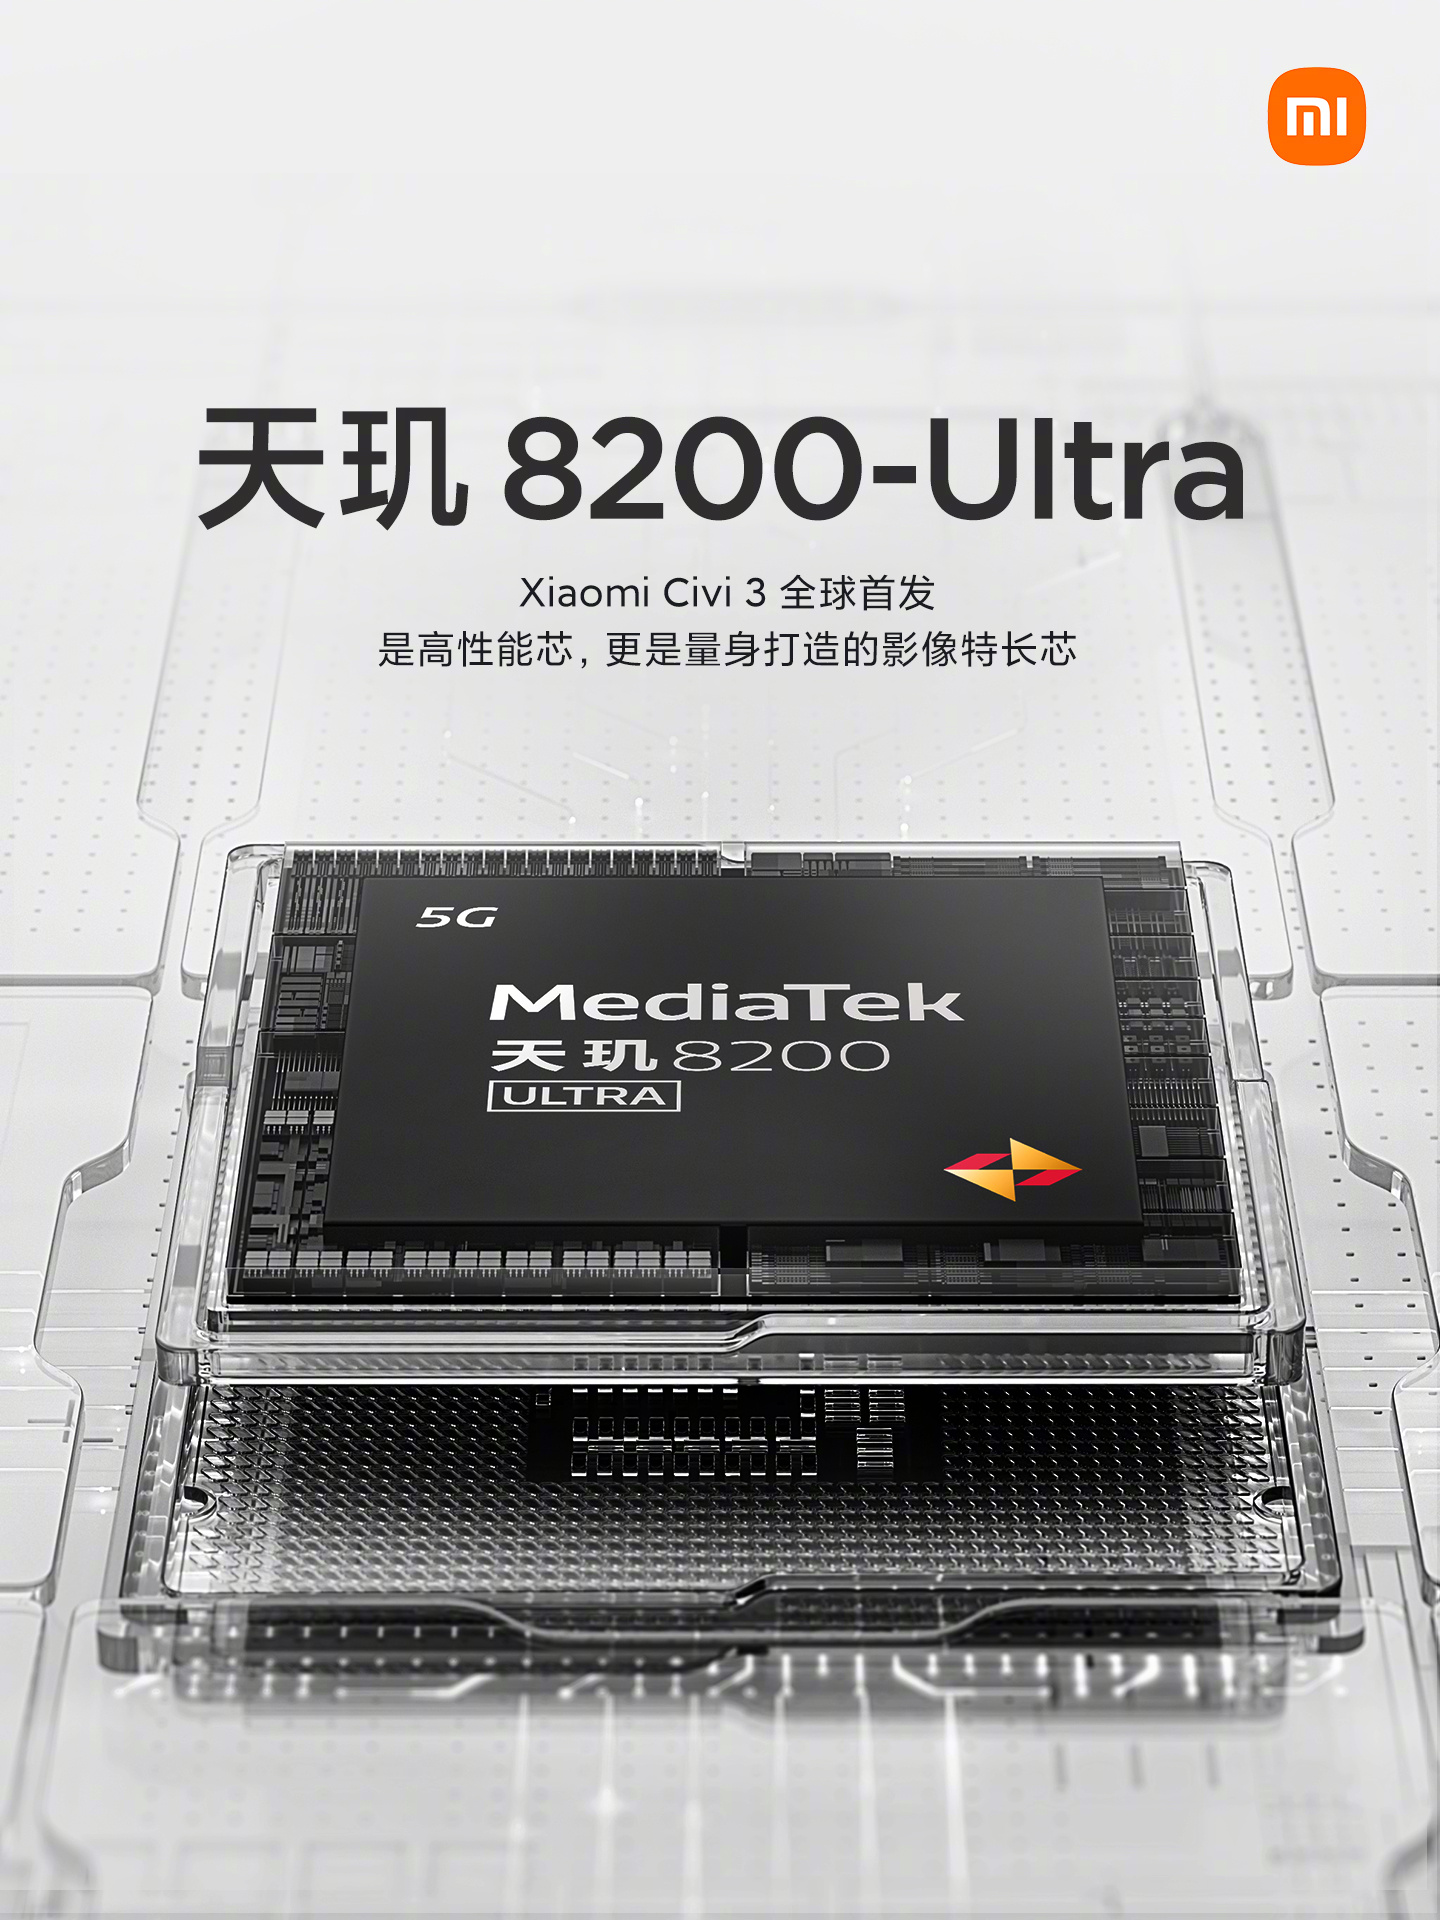 Xiaomi Civi 3 Chipset